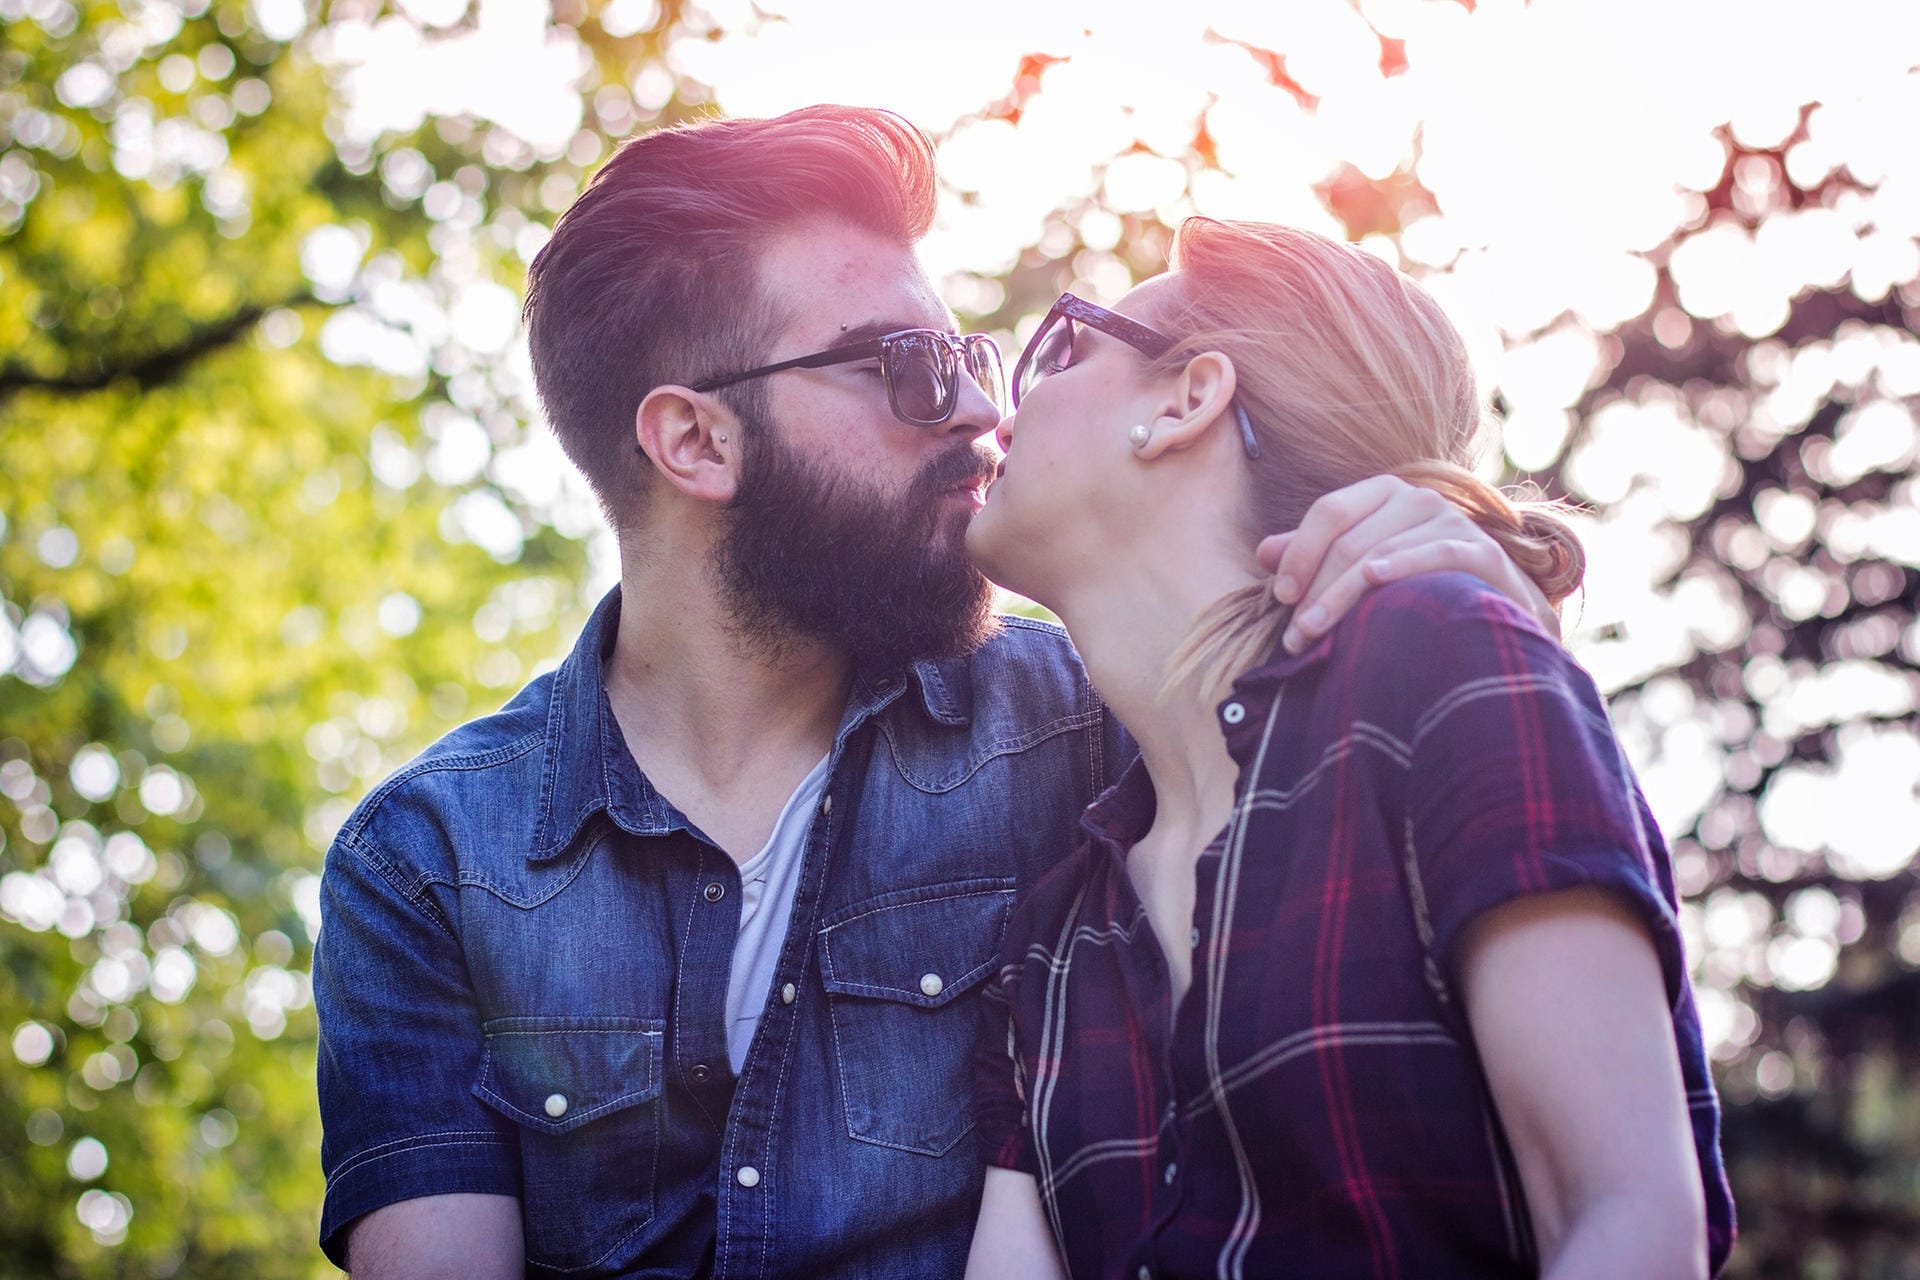 "Wenn man einen Bartträger küsst, fängt man sich schneller Krankheiten ein" – Falsch!